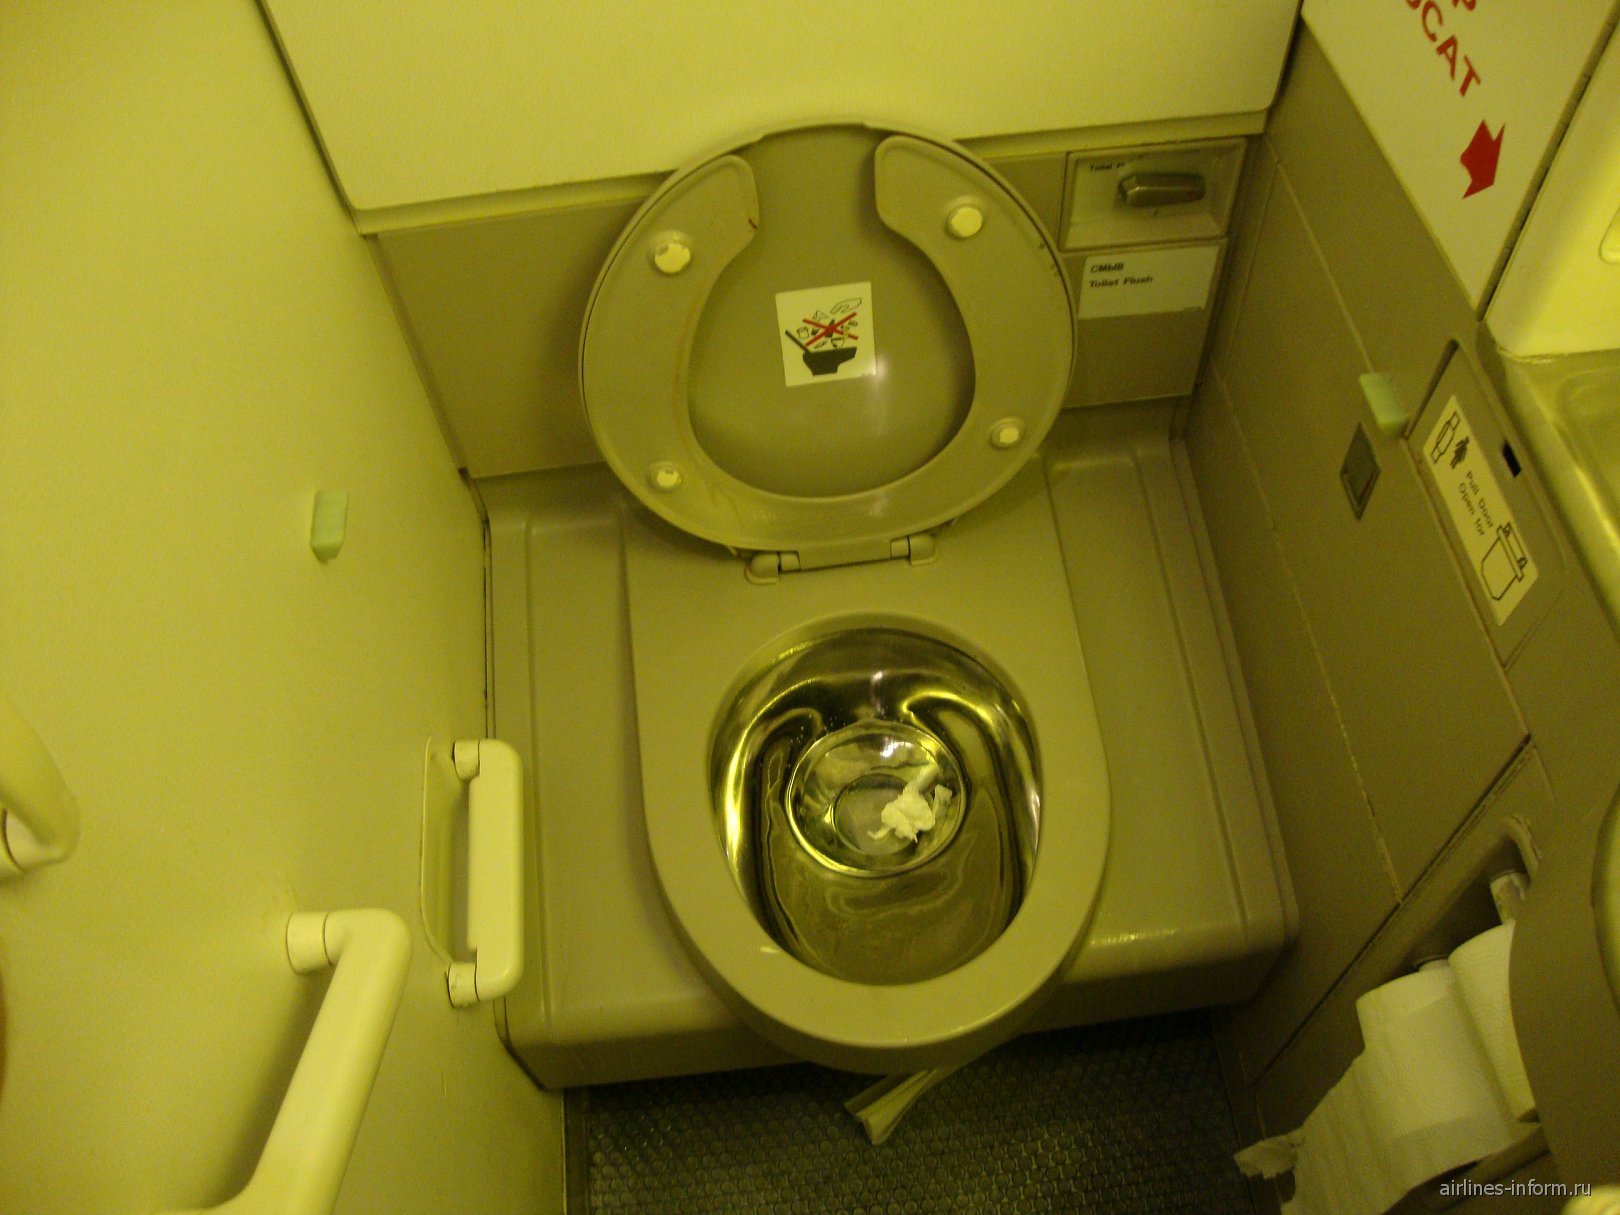 Туалет в самолете: как устроен, как работает, где находится